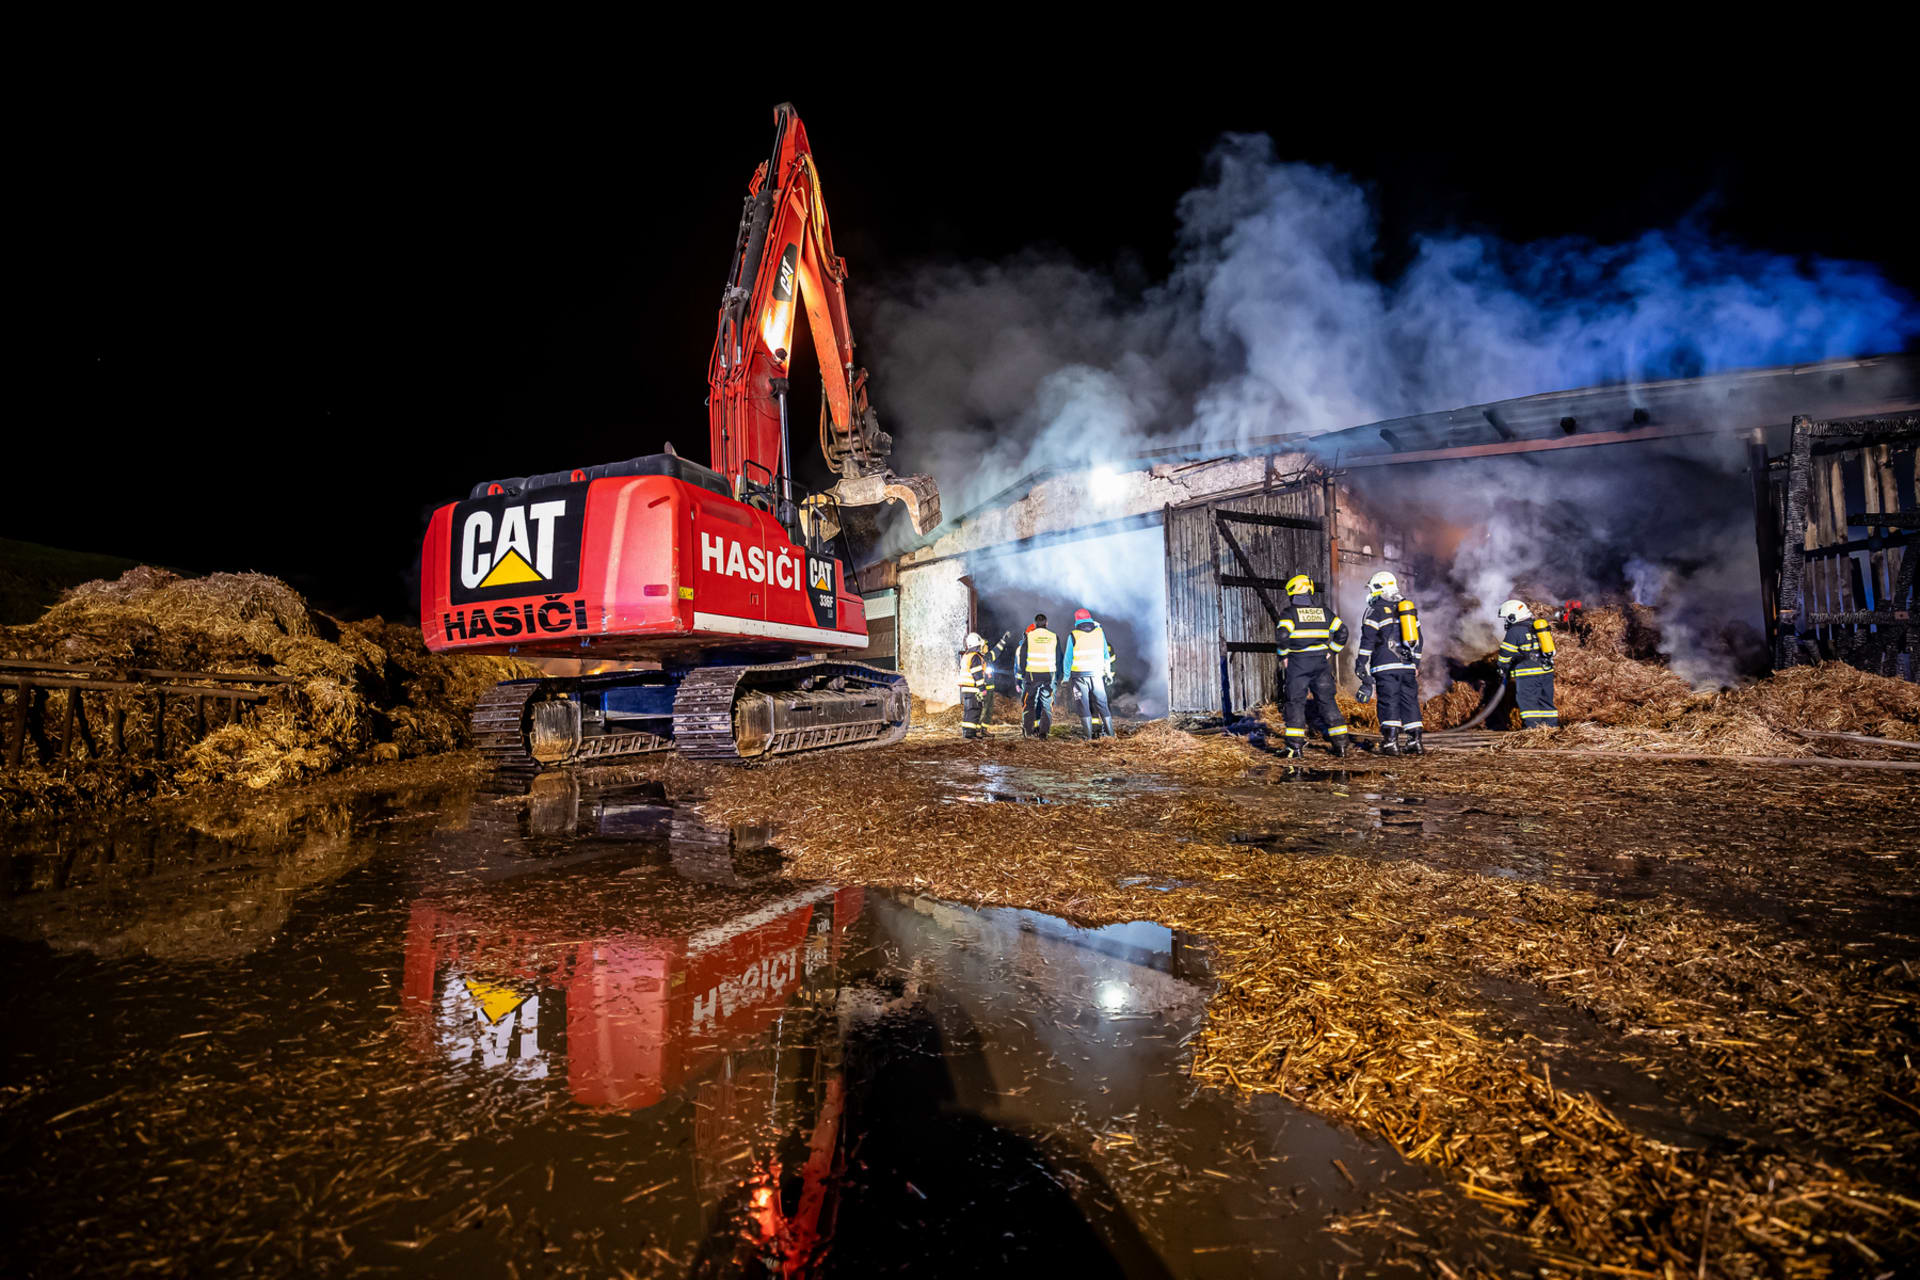 Hasiči na Královéhradecku likvidují velký požár haly se slámou.